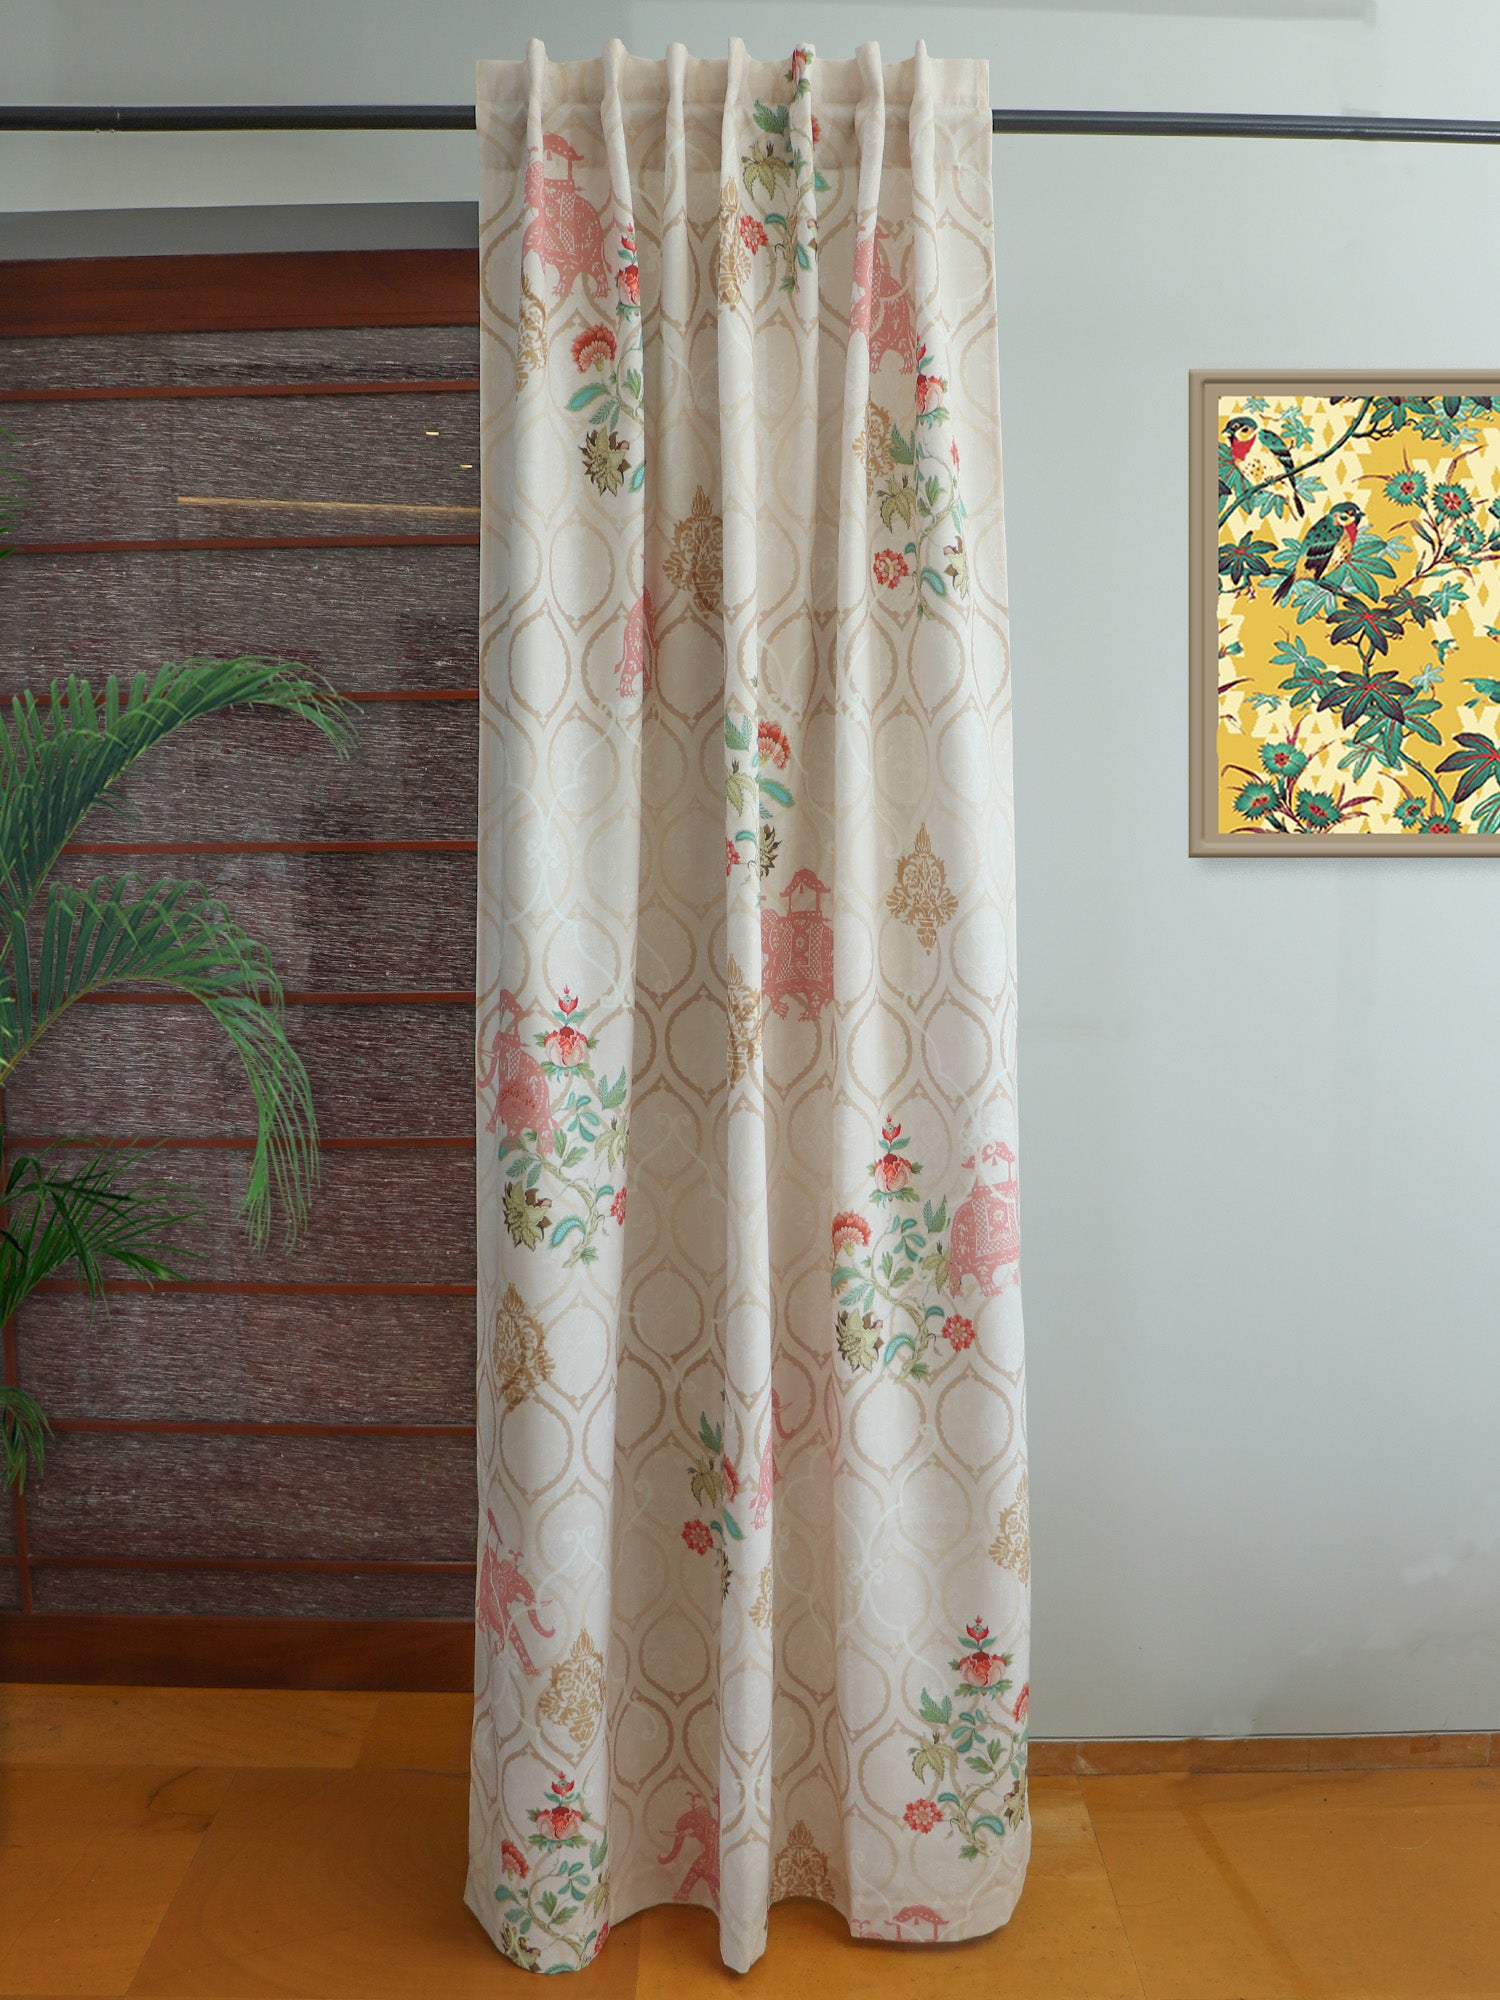 Door Curtain Cotton Blend Mughal Garden Printed in Beige Color - 50" x 84"(Hidden Loop)